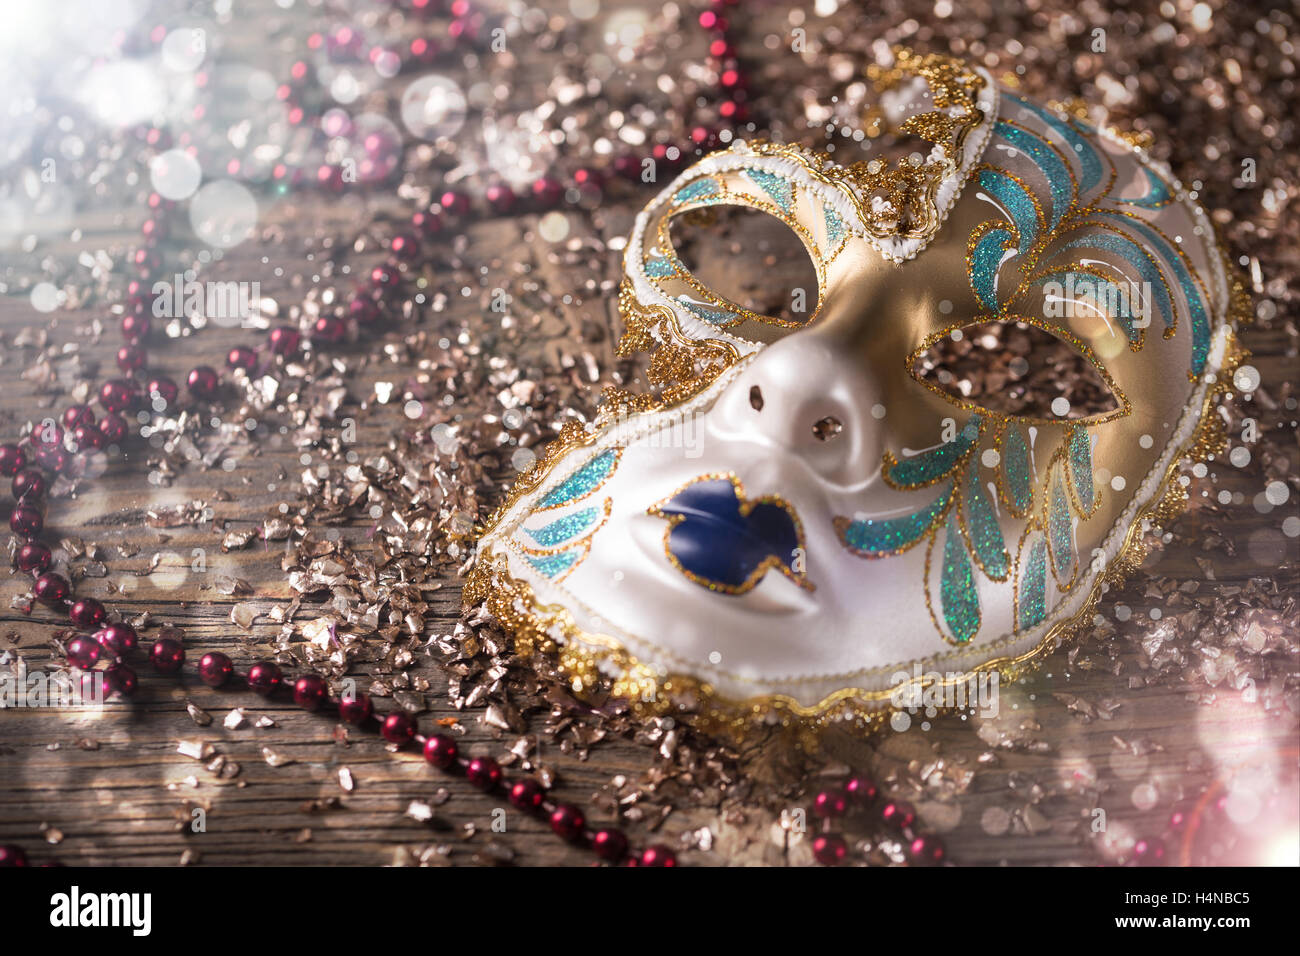 Masque de carnaval avec collier rouge et or confetti Banque D'Images